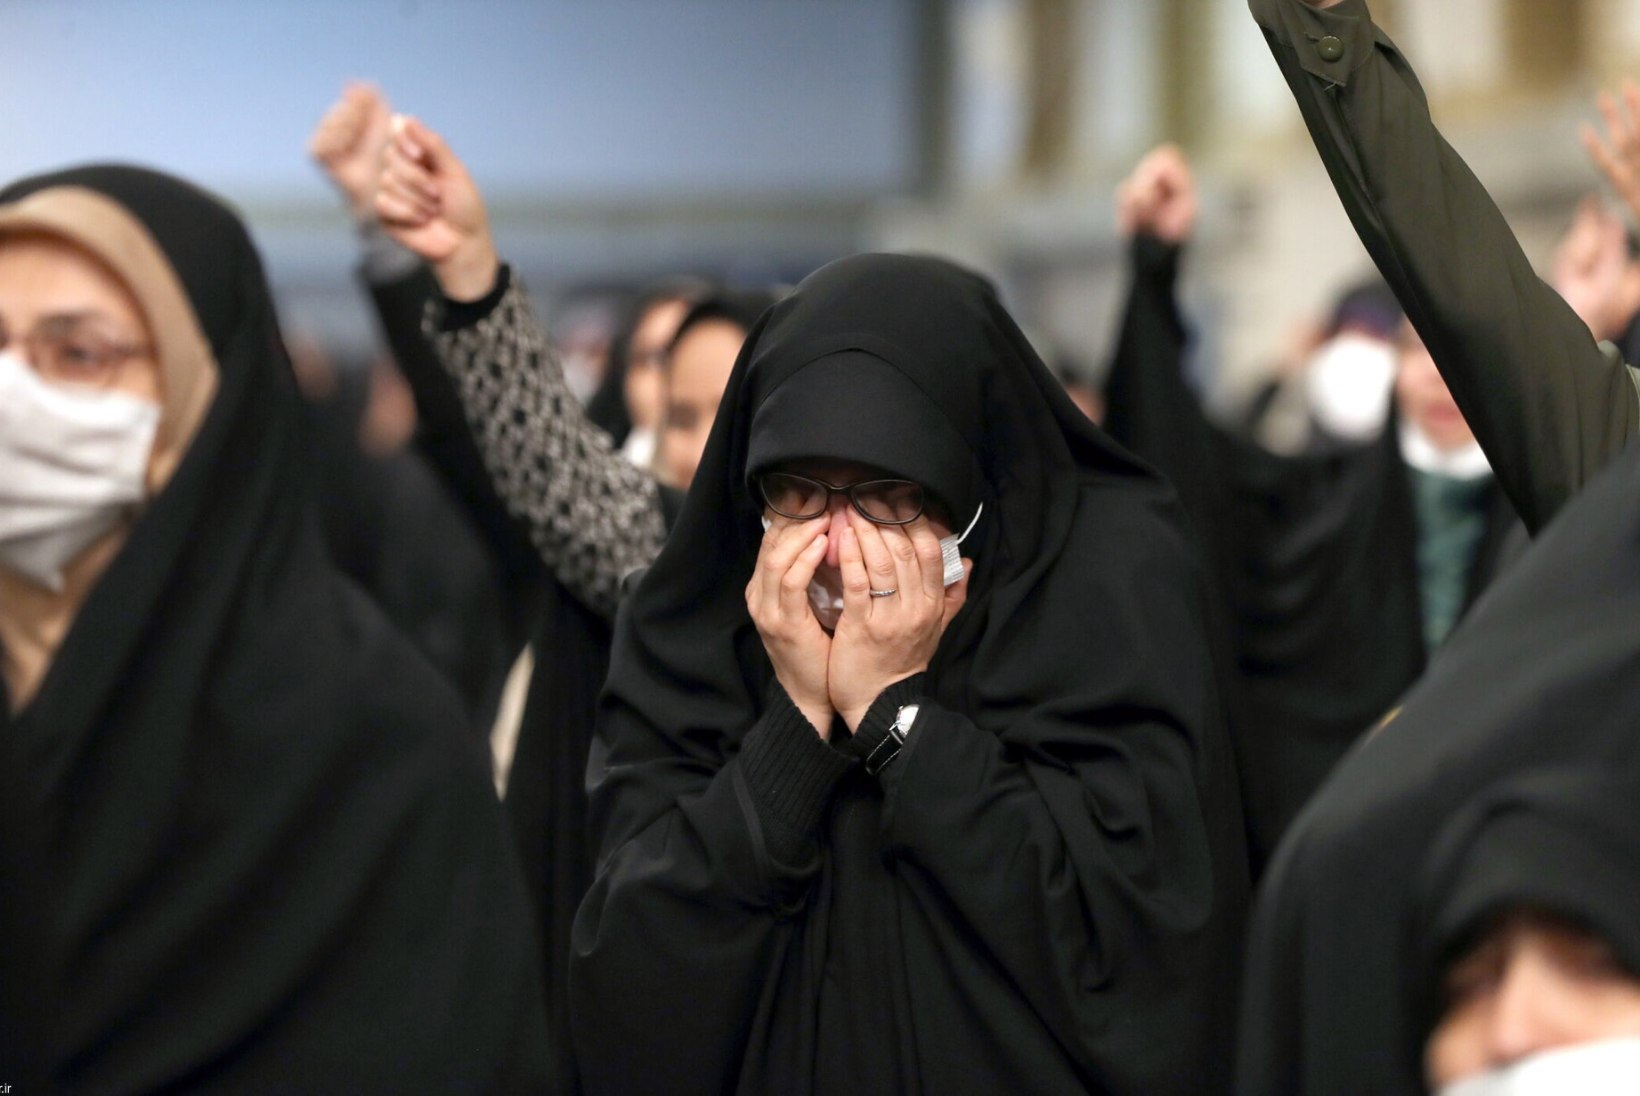 Iraani imaam leidis põua põhjuse: katmata peaga naised